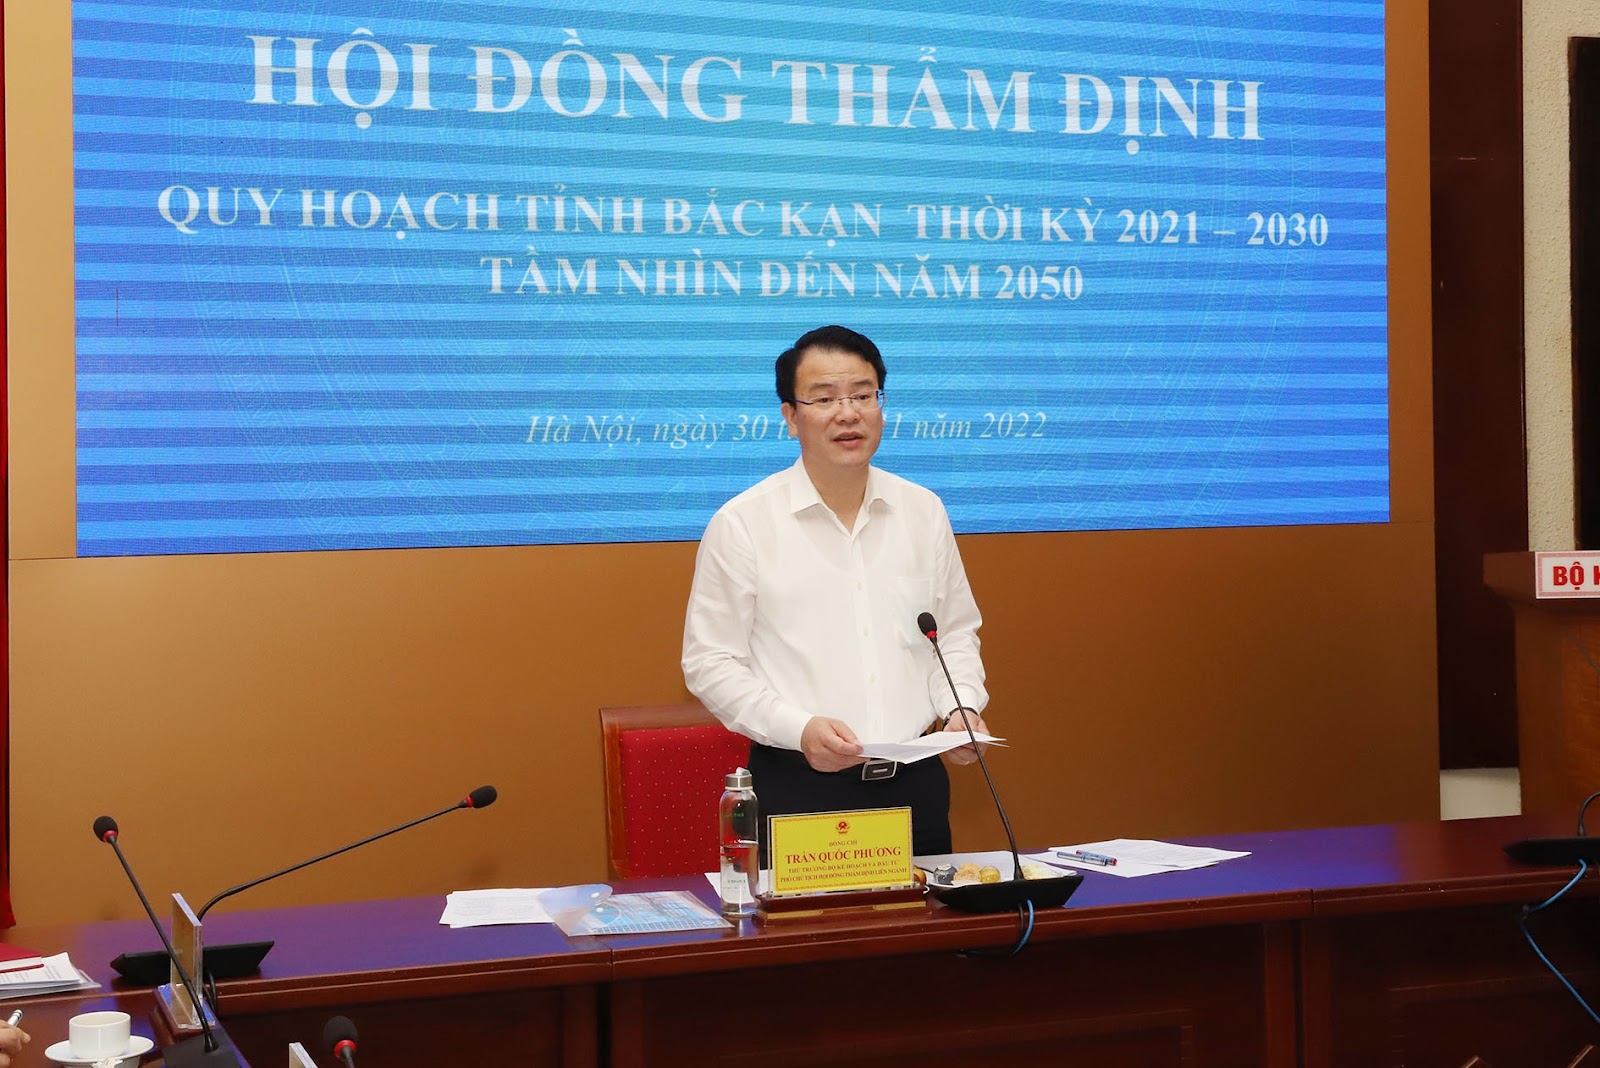 Thứ trưởng Bộ Kế hoạch và Đầu tư Trần Quốc Phương, Phó Chủ tịch Hội đồng thẩm định khai mạc Phiên họp.